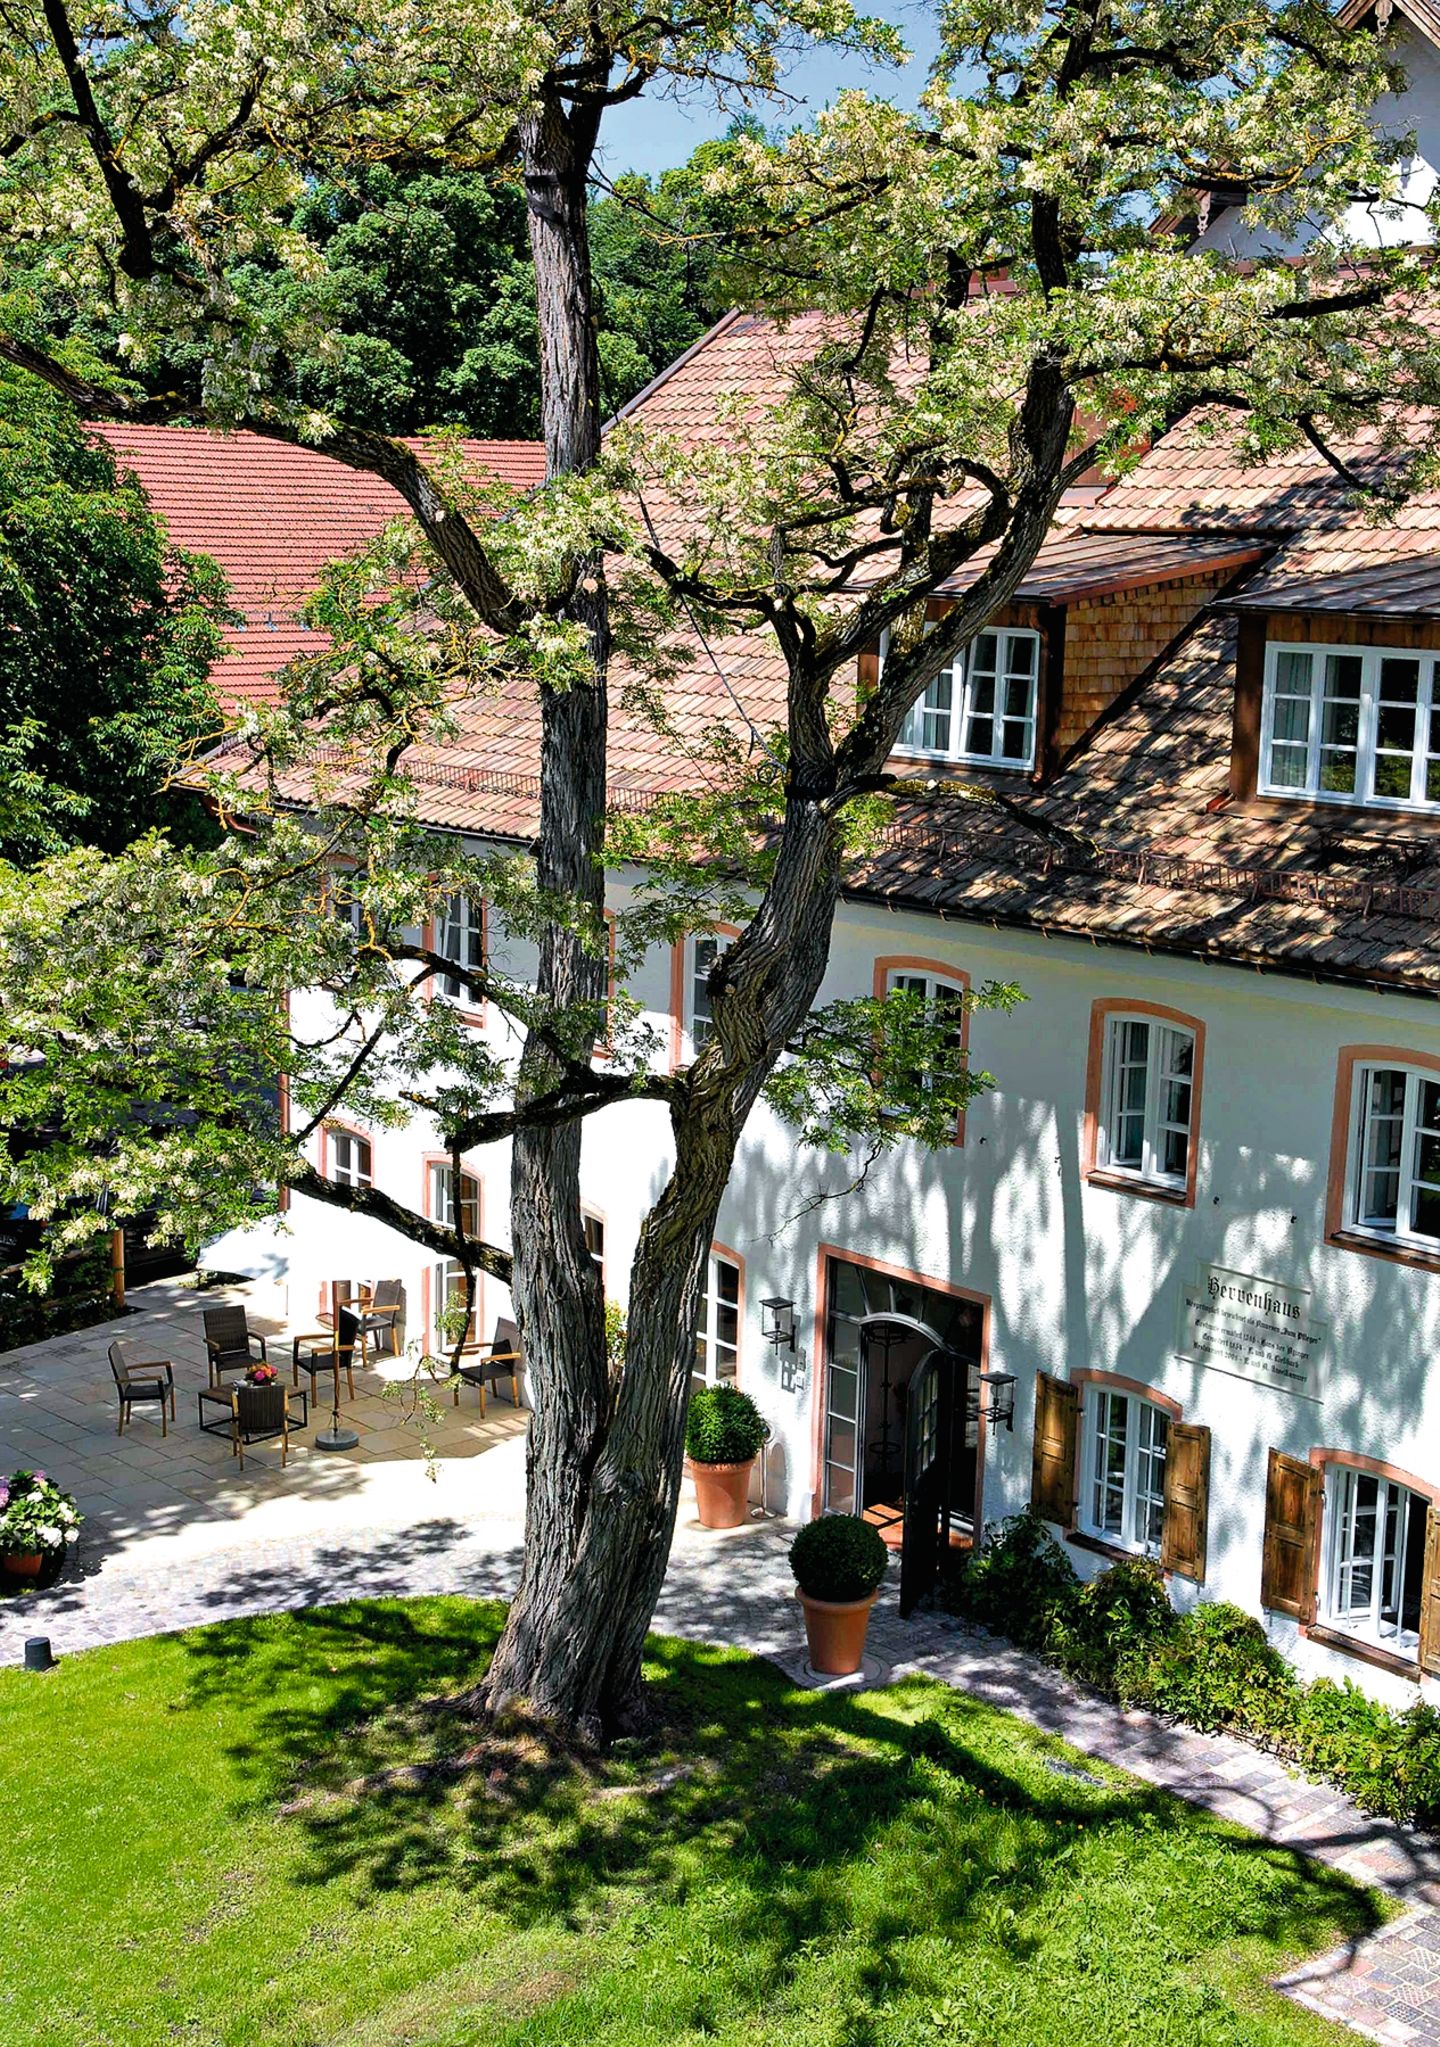 Brauereigasthof in Bayern mit weißer Fassade und rotem Dach